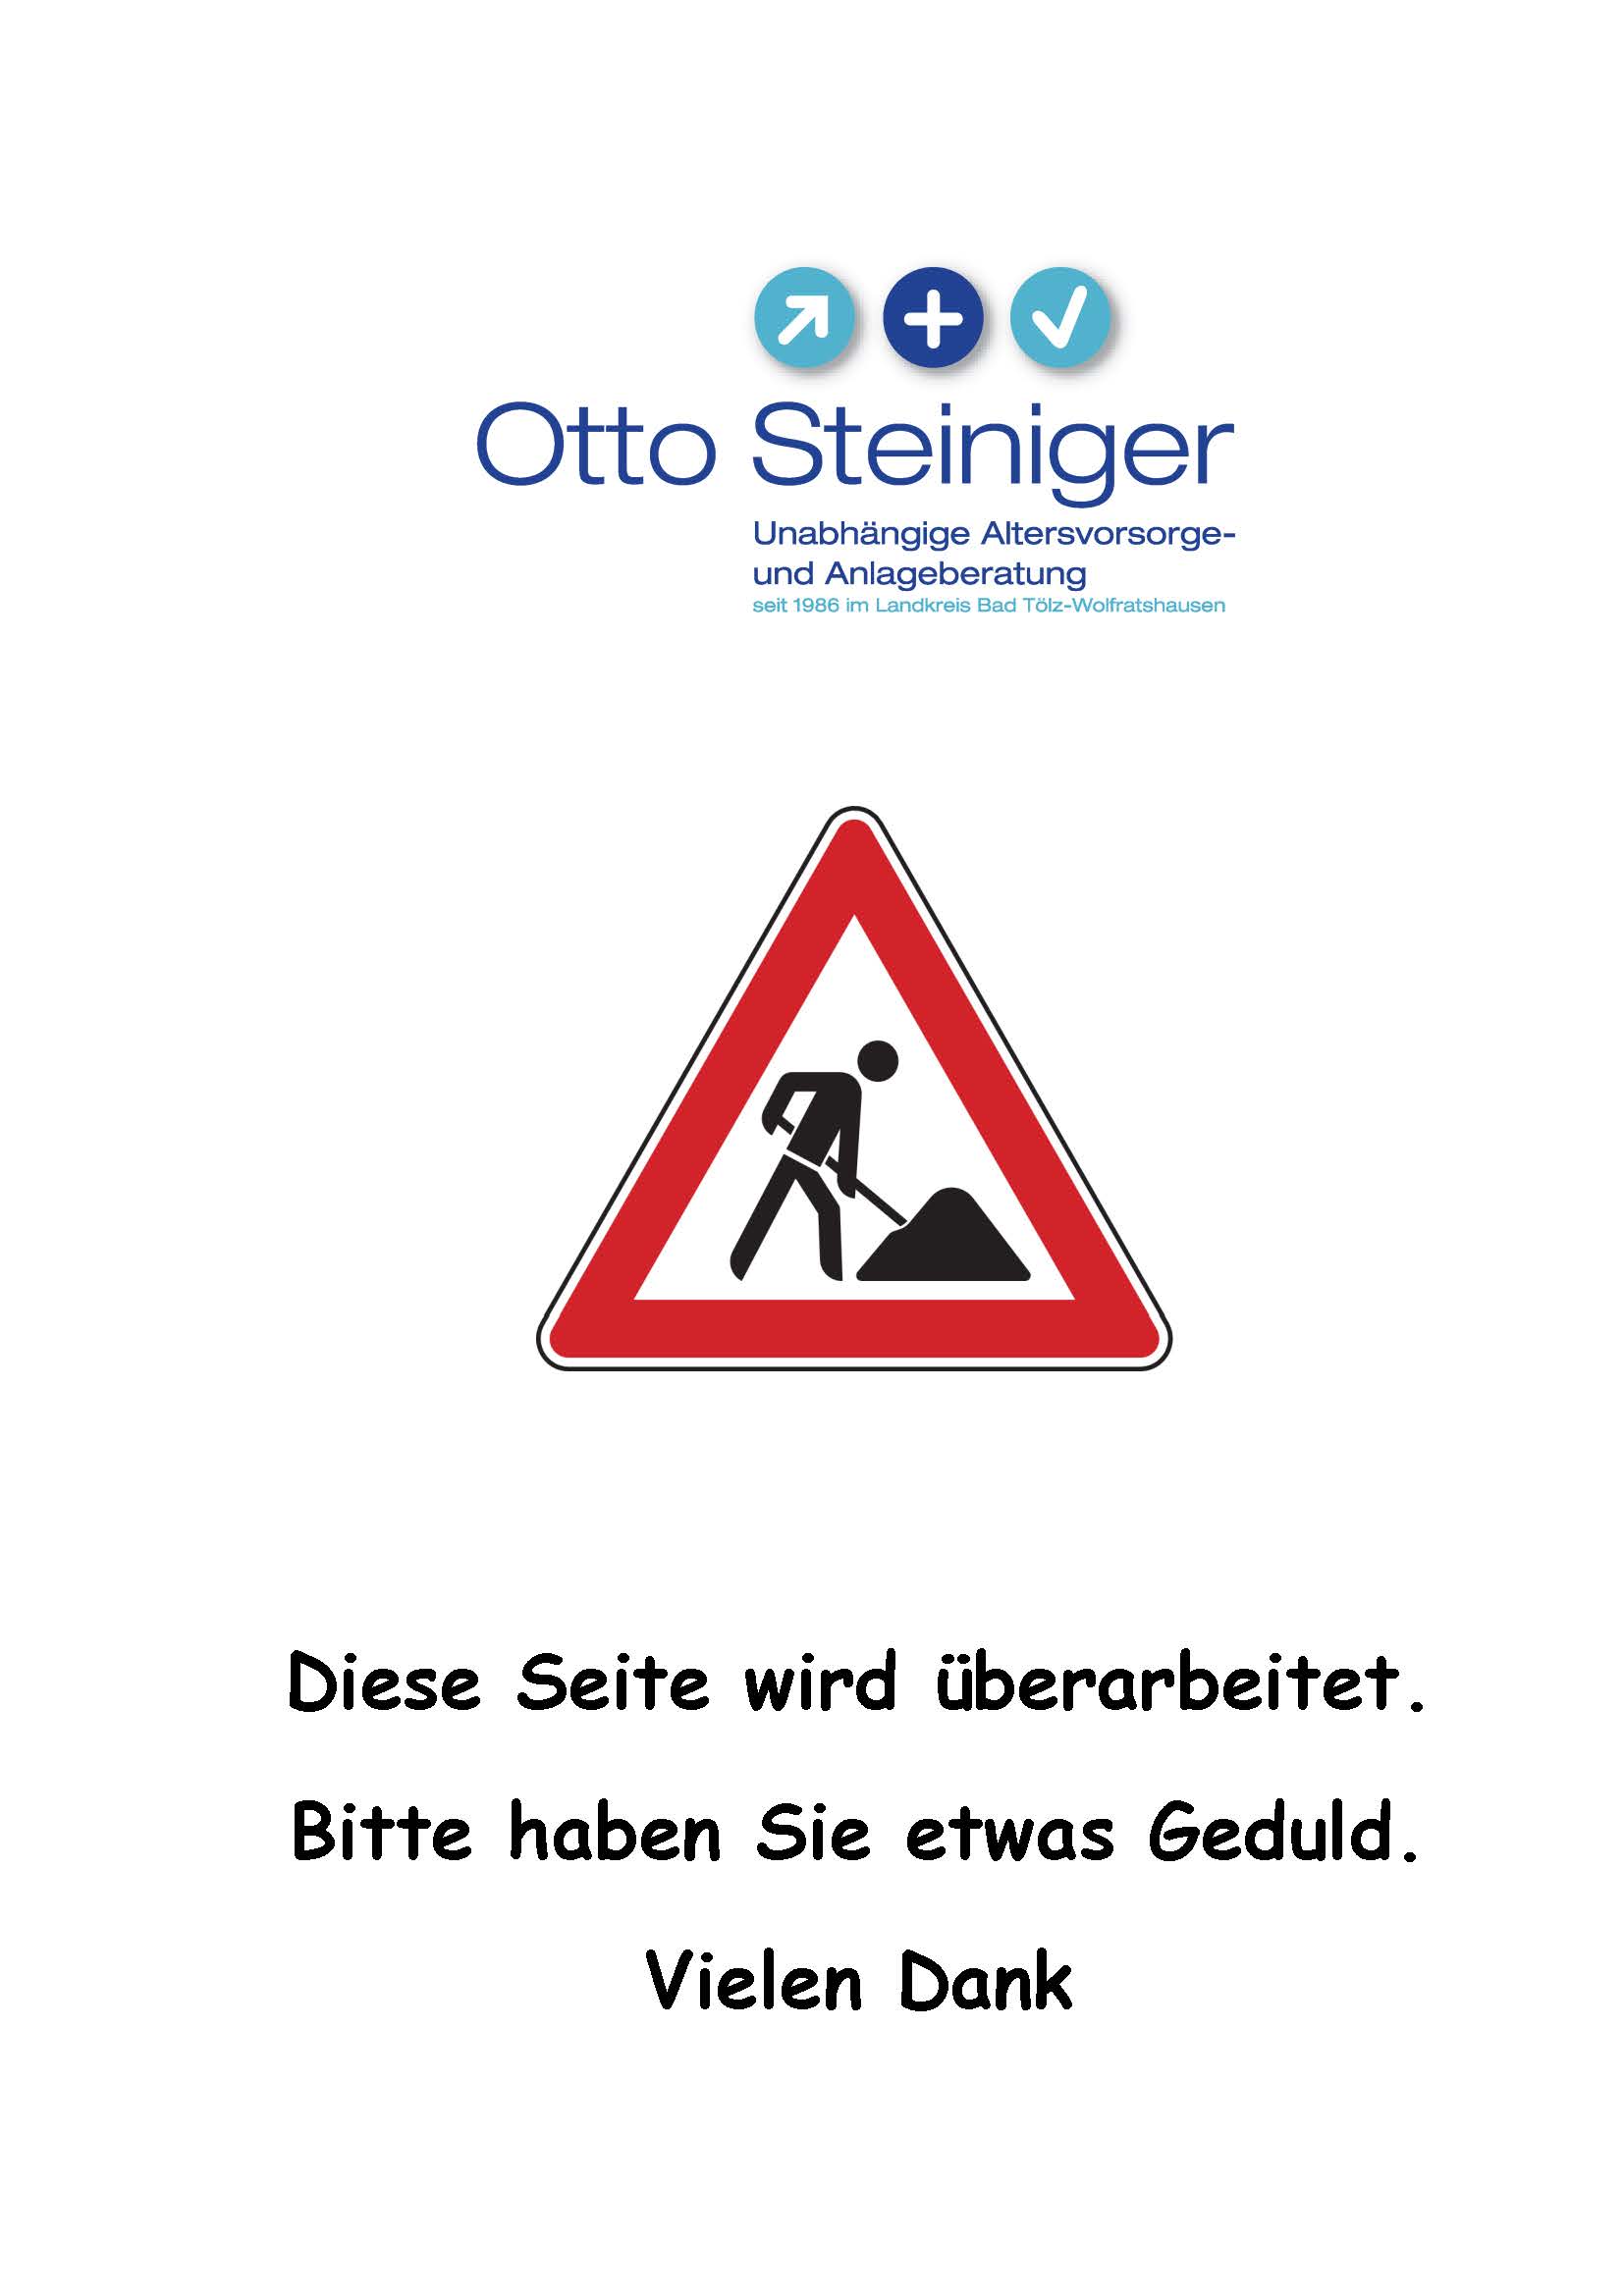 Baustelle-Verkehrszeichen.jpg